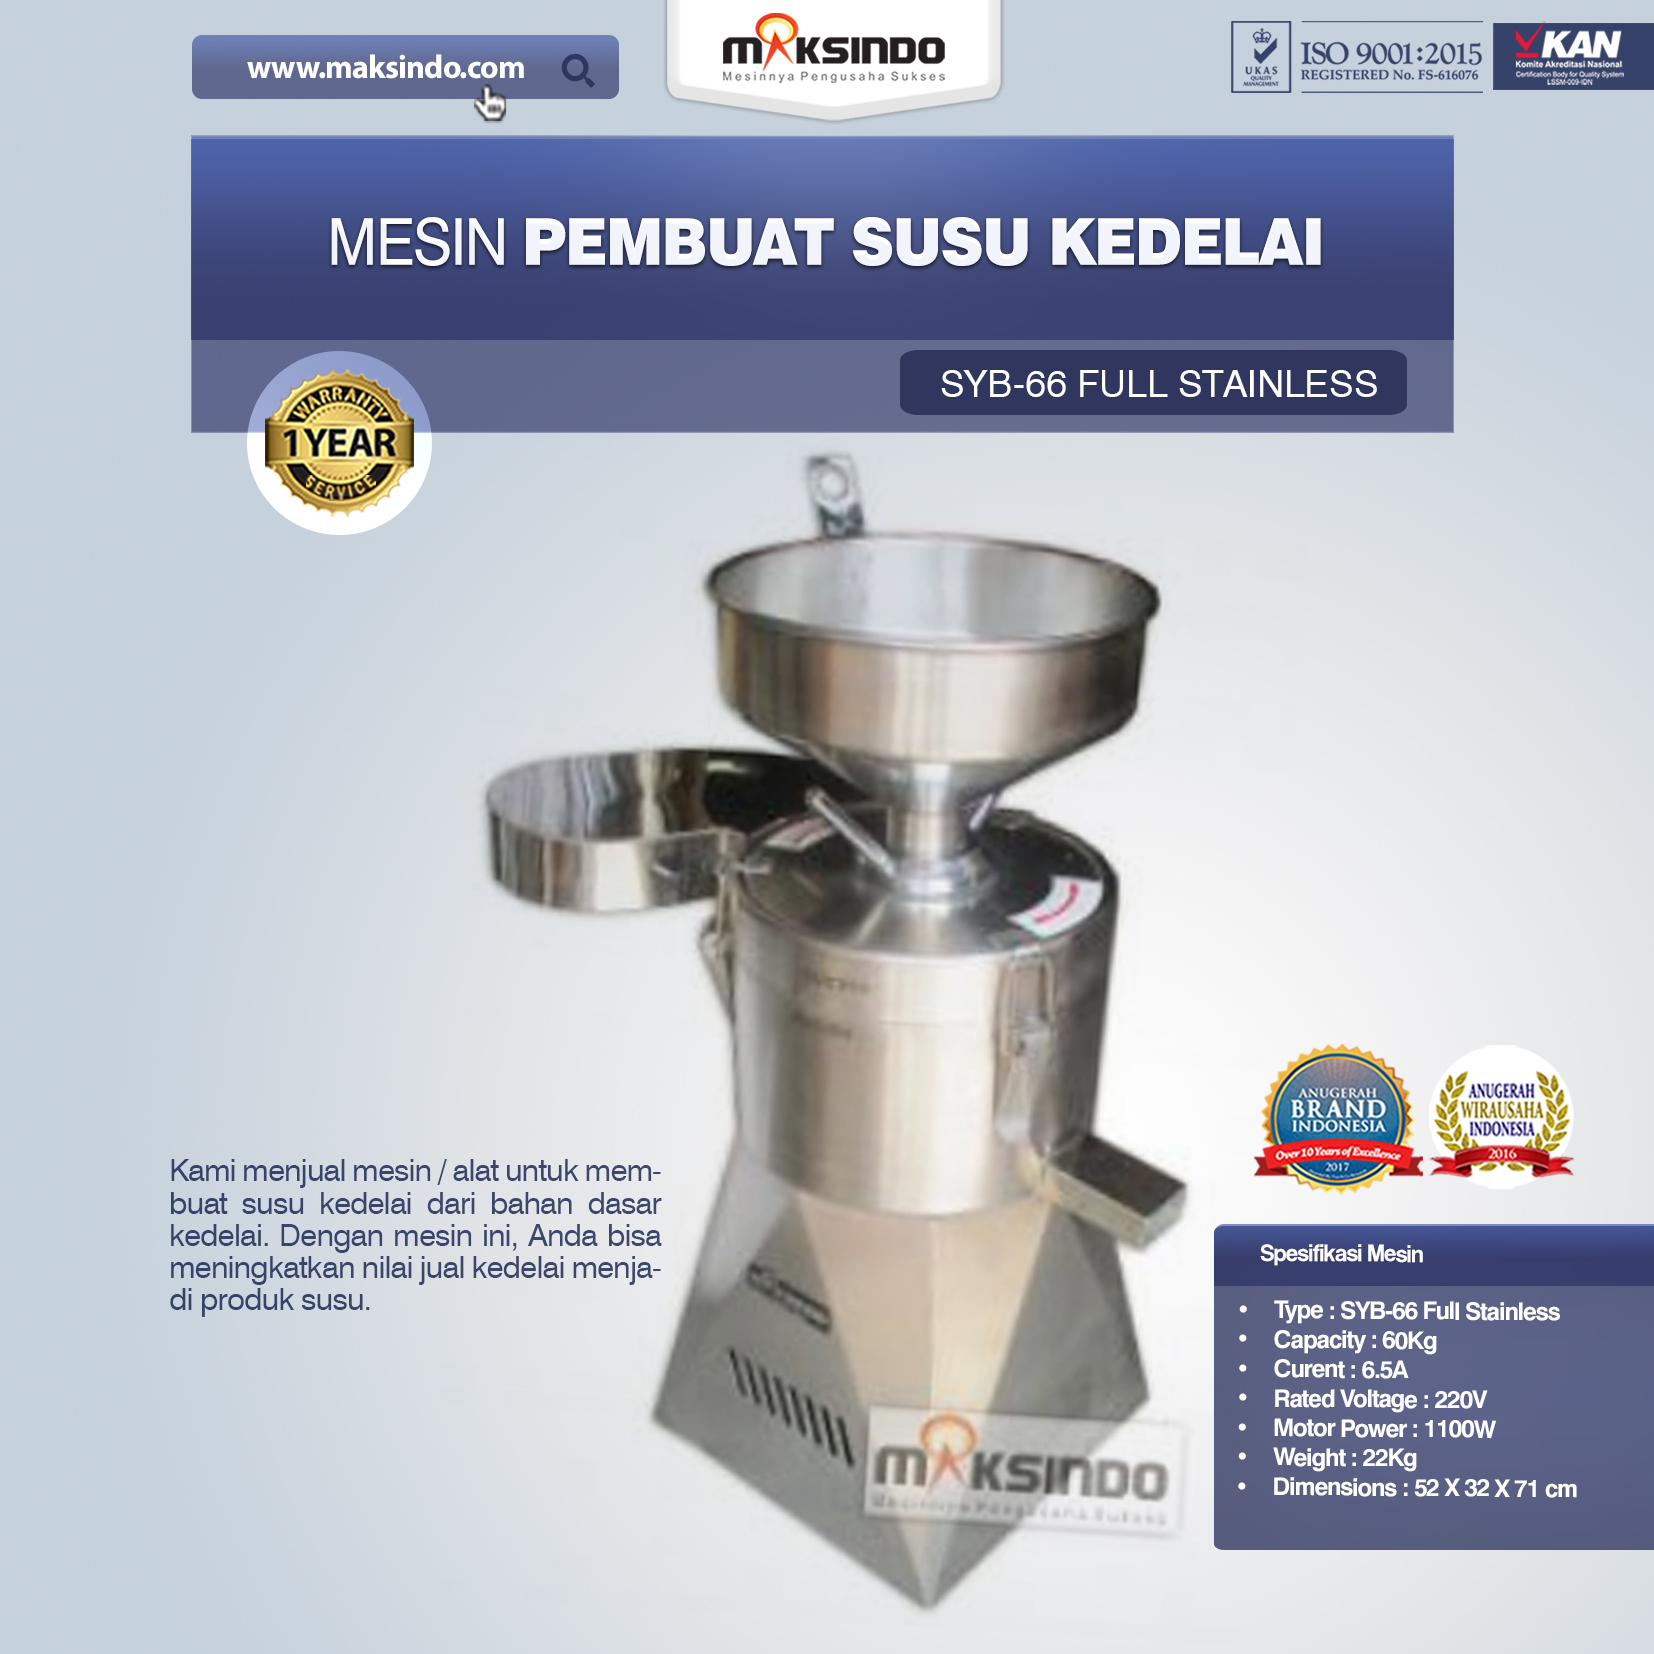 Jual Alat dan Mesin Pengolahan Susu Kedelai di Bogor